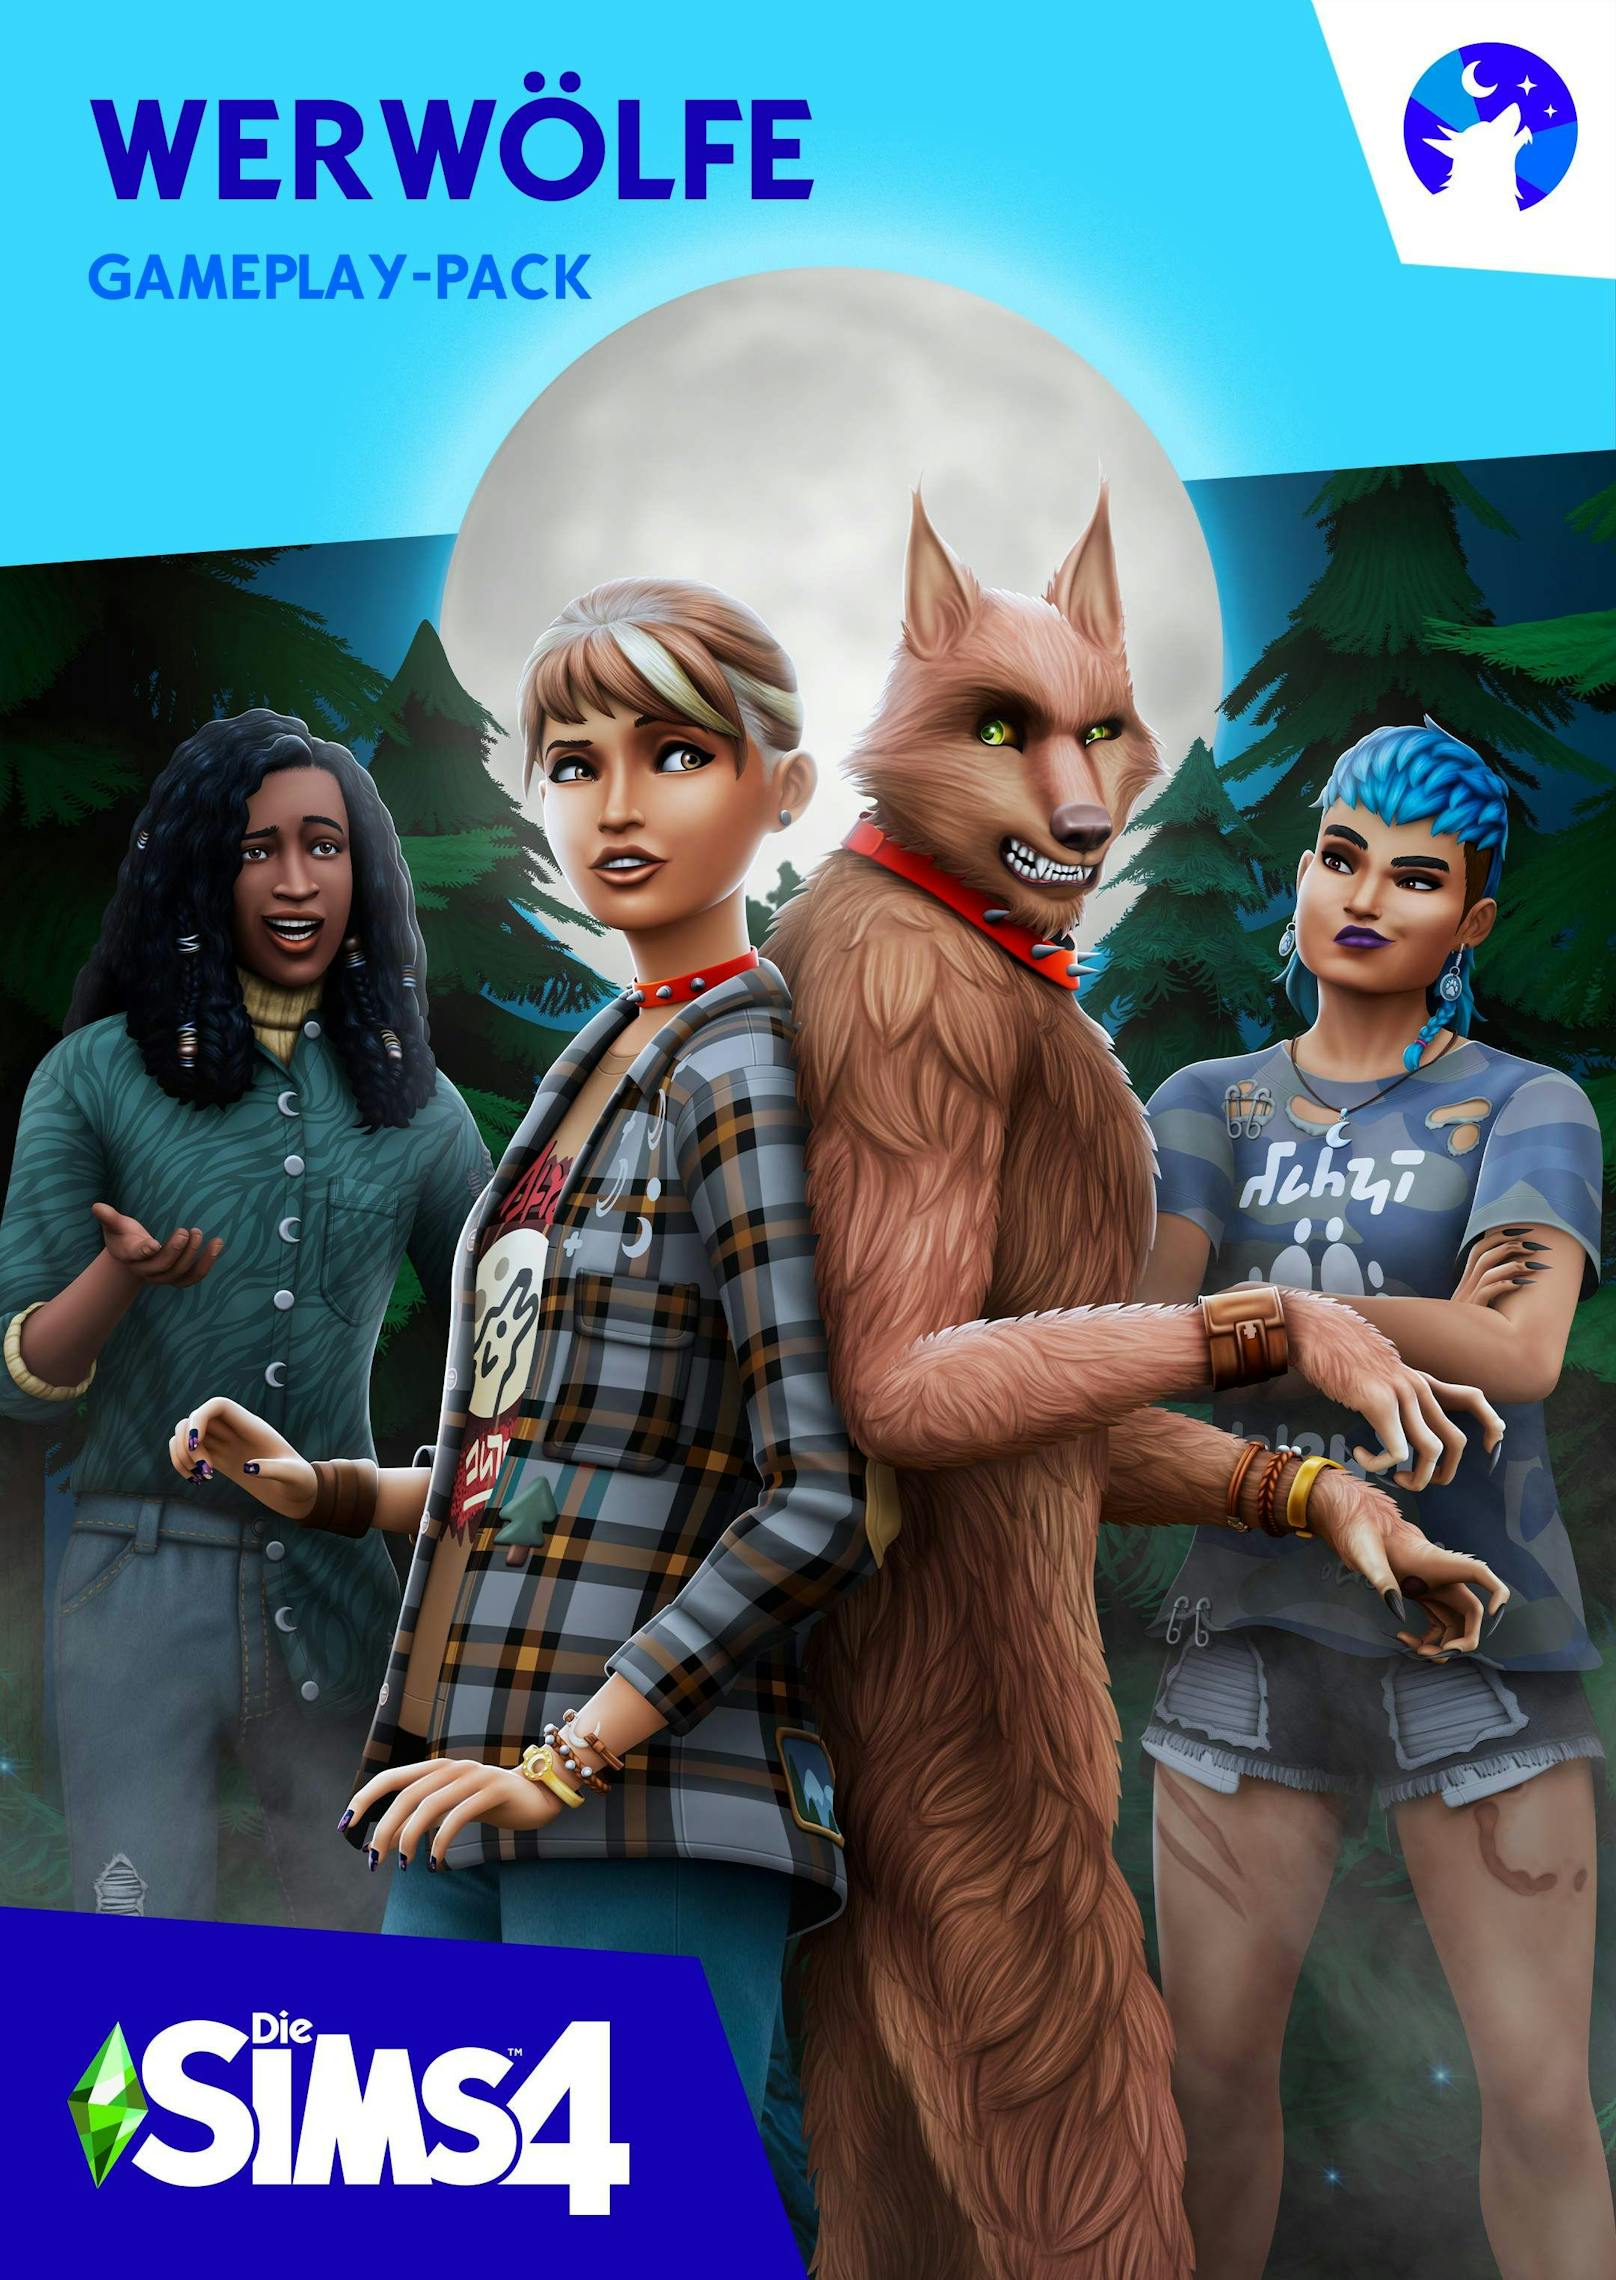 "Die Sims 4 Werwölfe"-Gameplay-Pack ist jetzt erhältlich.